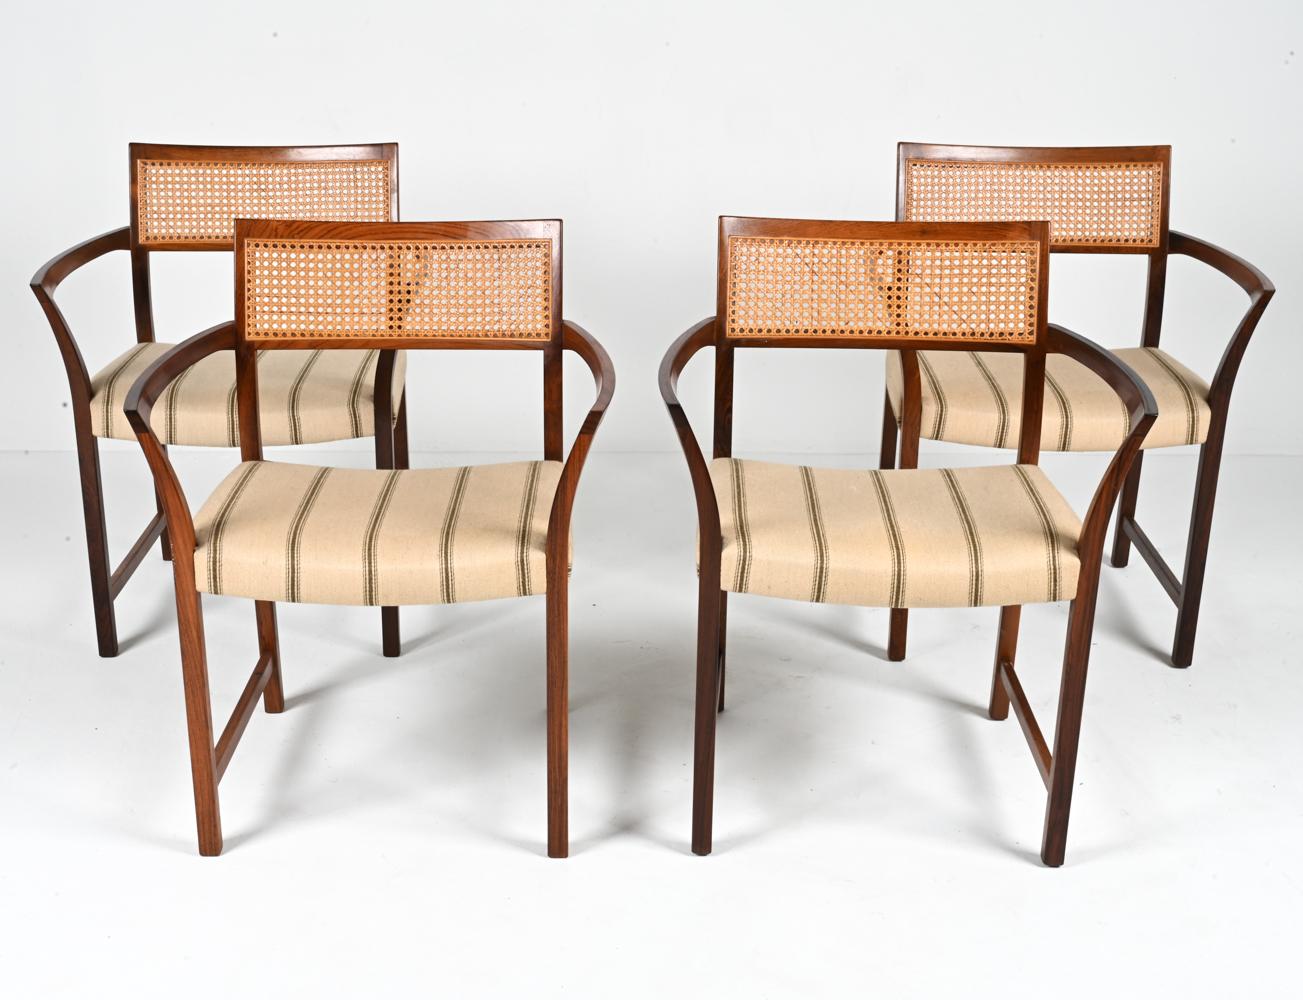 Entrez dans l'âge d'or du design avec cet ensemble exquis de quatre fauteuils danois Illum Wikkelsø des années 1950. Eleg et la quintessence de l'élégance de l'esthétique moderne du milieu du siècle, ces chaises sont une trouvaille rare pour le